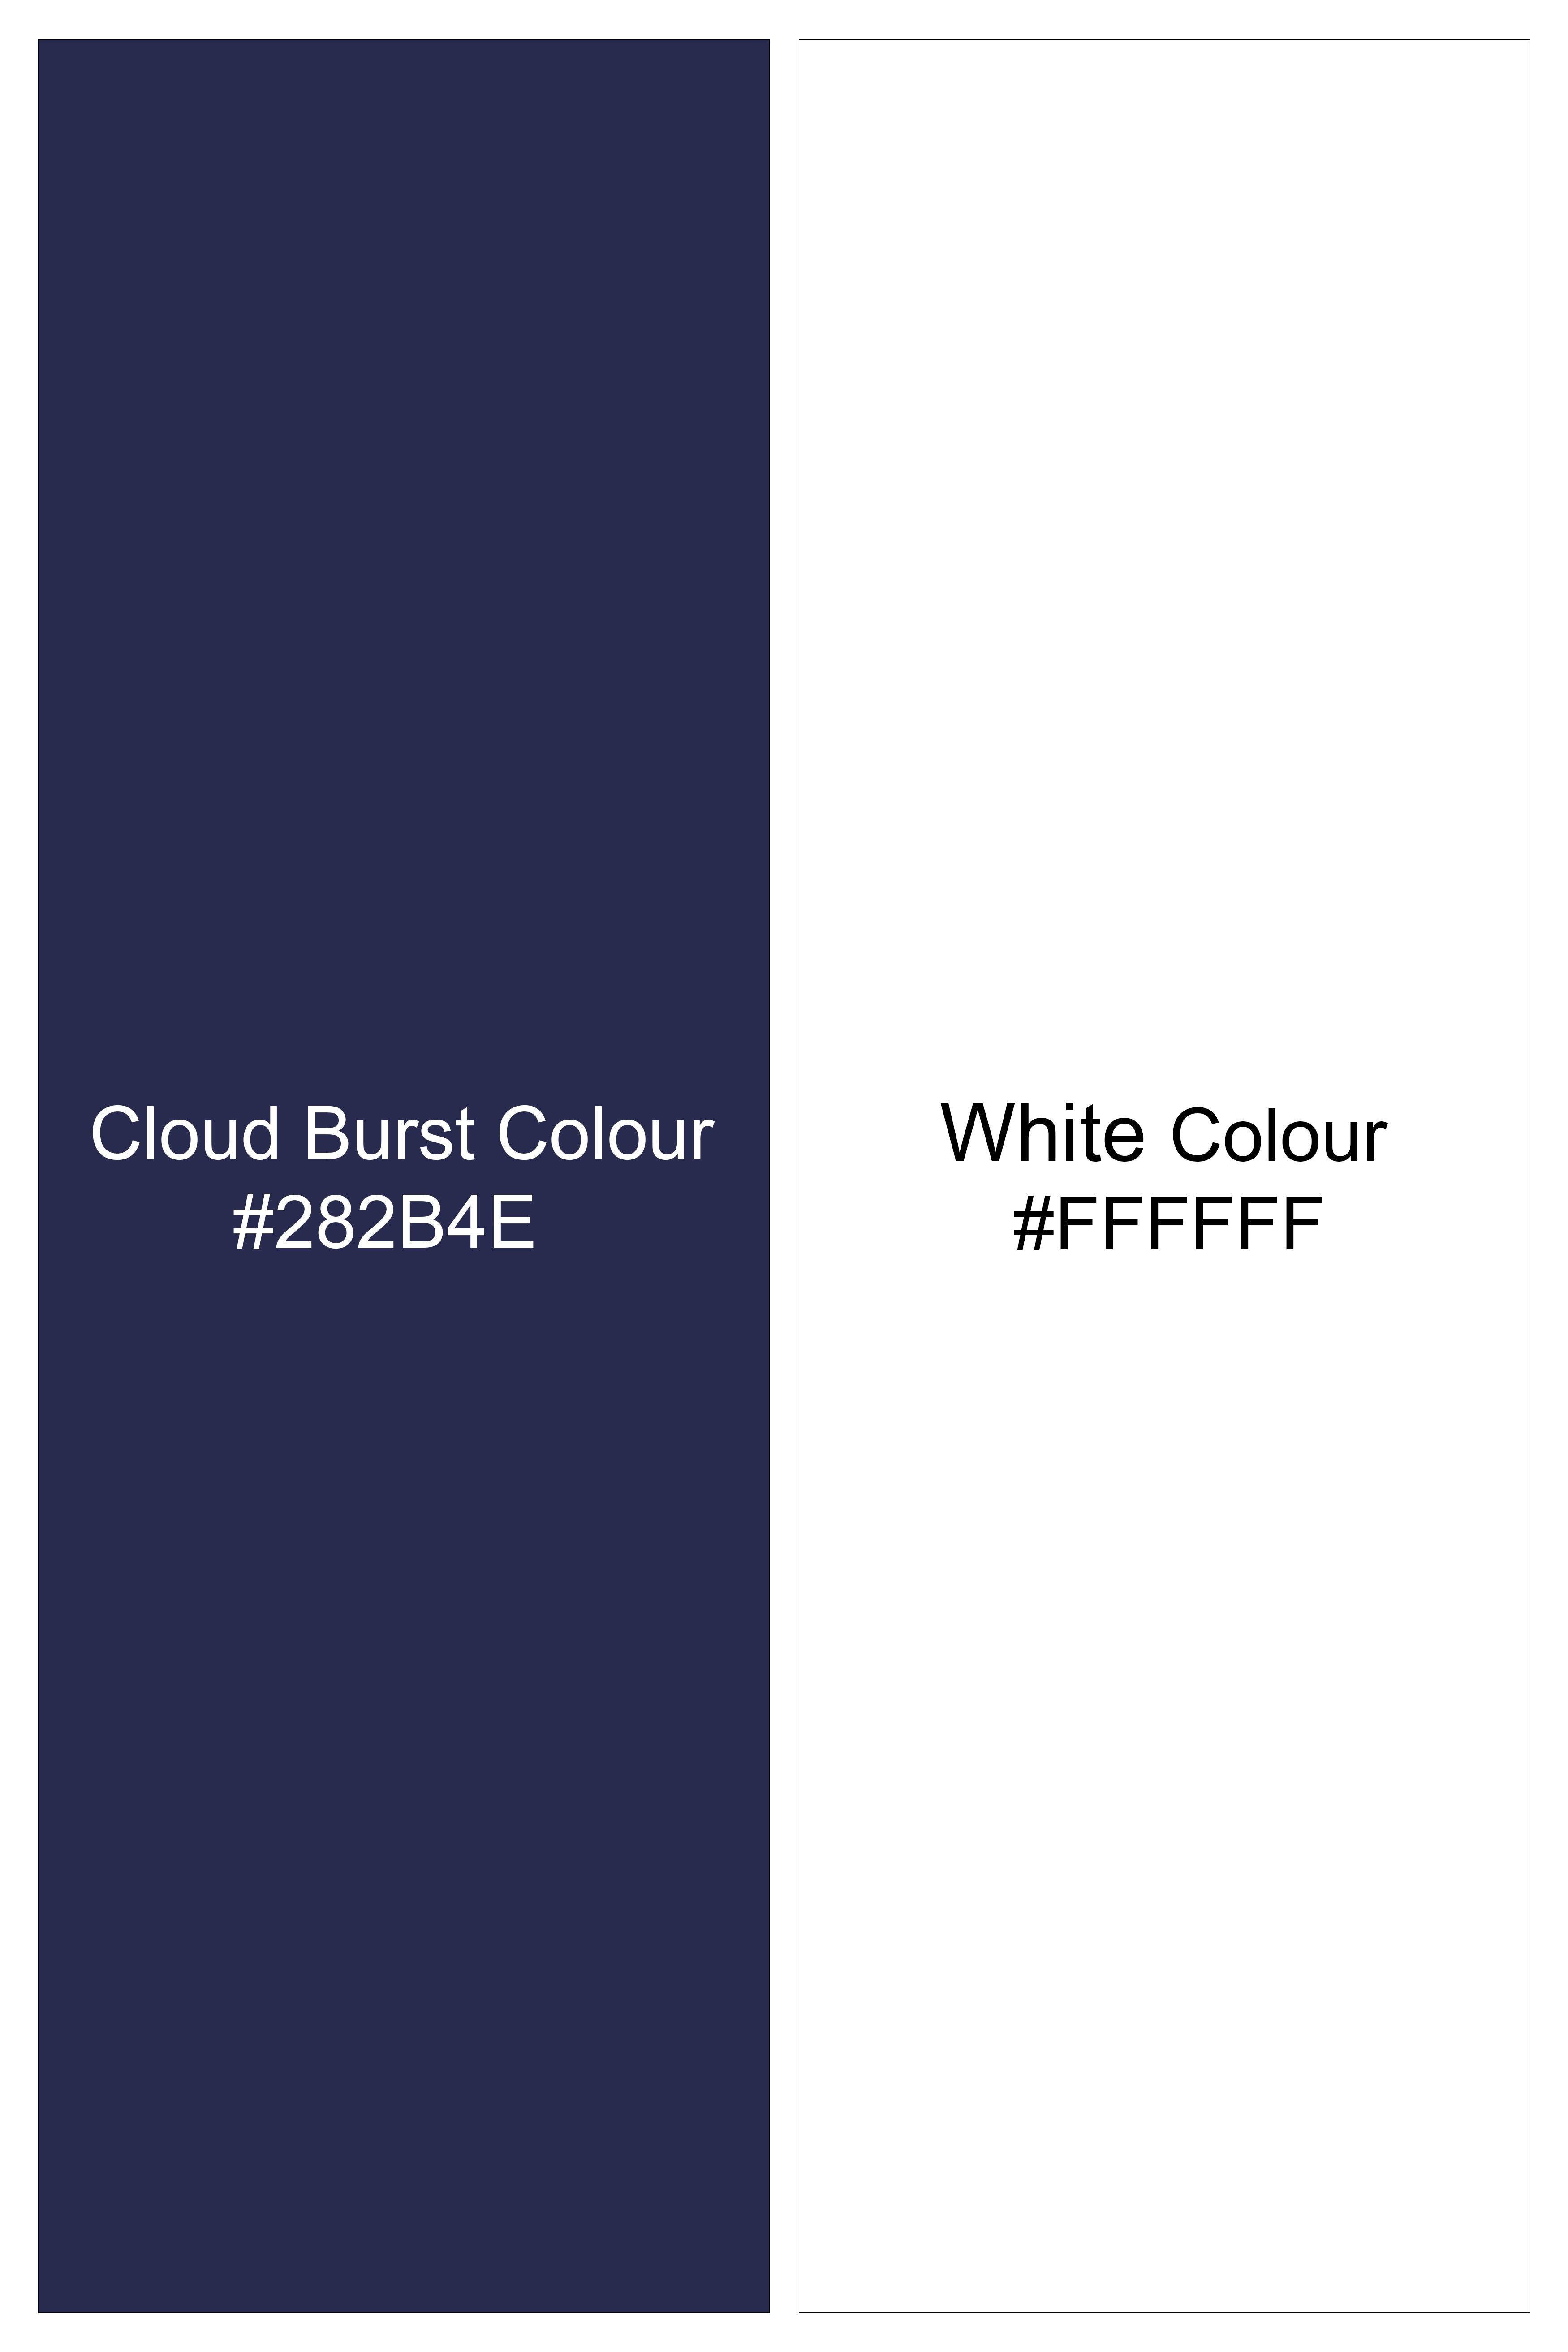 Cloud Burst Blue and White Handstitched Embroidered Royal Oxford Designer Shirt 6134-BD-OS-E225-38, 6134-BD-OS-E225-H-38, 6134-BD-OS-E225-39, 6134-BD-OS-E225-H-39, 6134-BD-OS-E225-40, 6134-BD-OS-E225-H-40, 6134-BD-OS-E225-42, 6134-BD-OS-E225-H-42, 6134-BD-OS-E225-44, 6134-BD-OS-E225-H-44, 6134-BD-OS-E225-46, 6134-BD-OS-E225-H-46, 6134-BD-OS-E225-48, 6134-BD-OS-E225-H-48, 6134-BD-OS-E225-50, 6134-BD-OS-E225-H-50, 6134-BD-OS-E225-52, 6134-BD-OS-E225-H-52